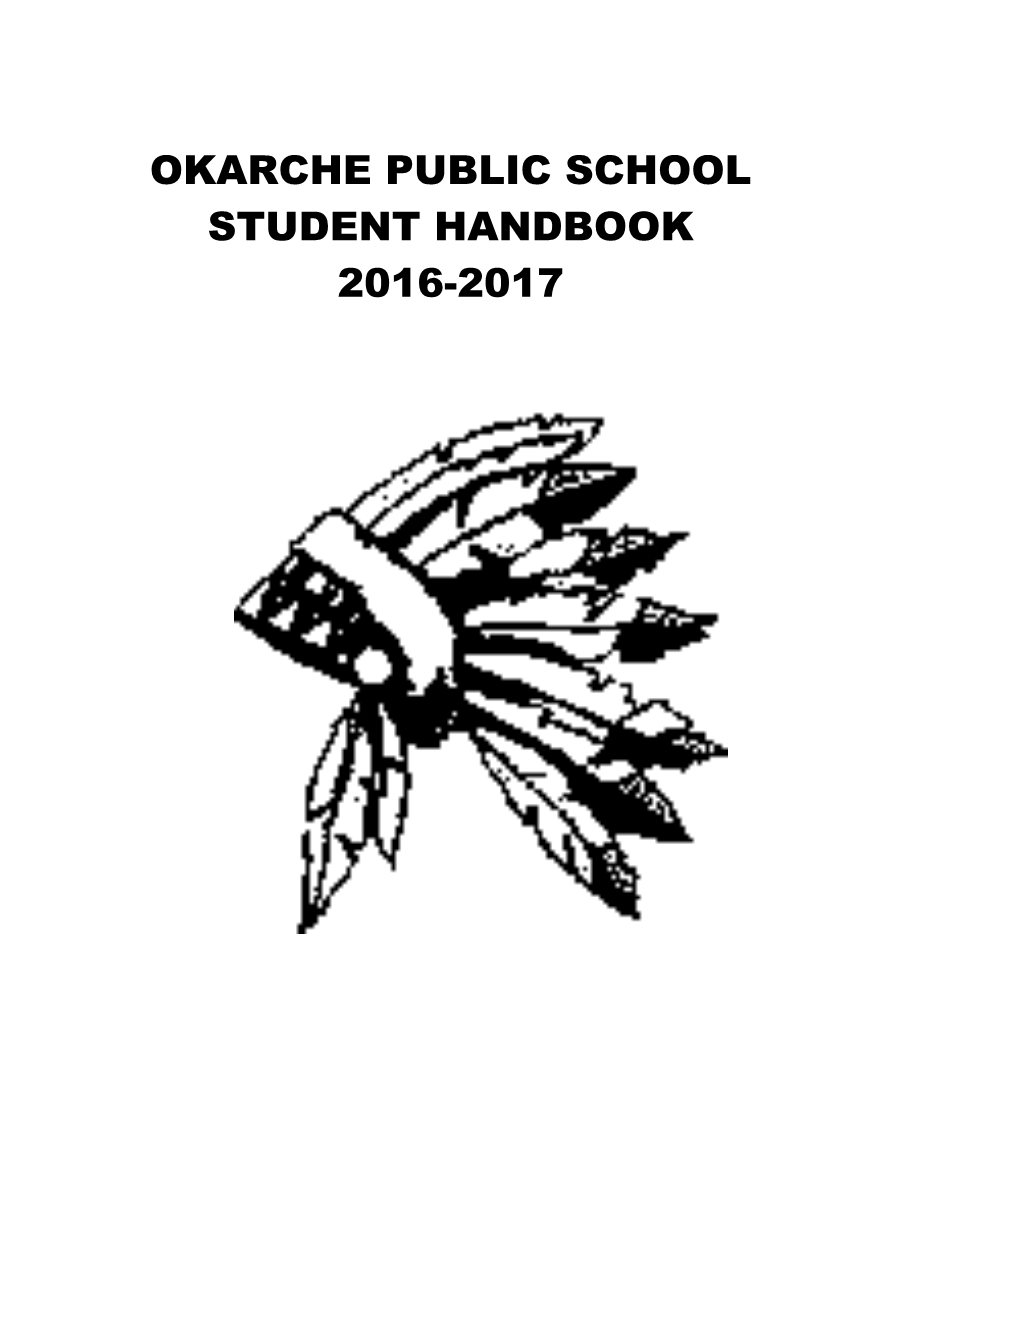 Okarche Public School